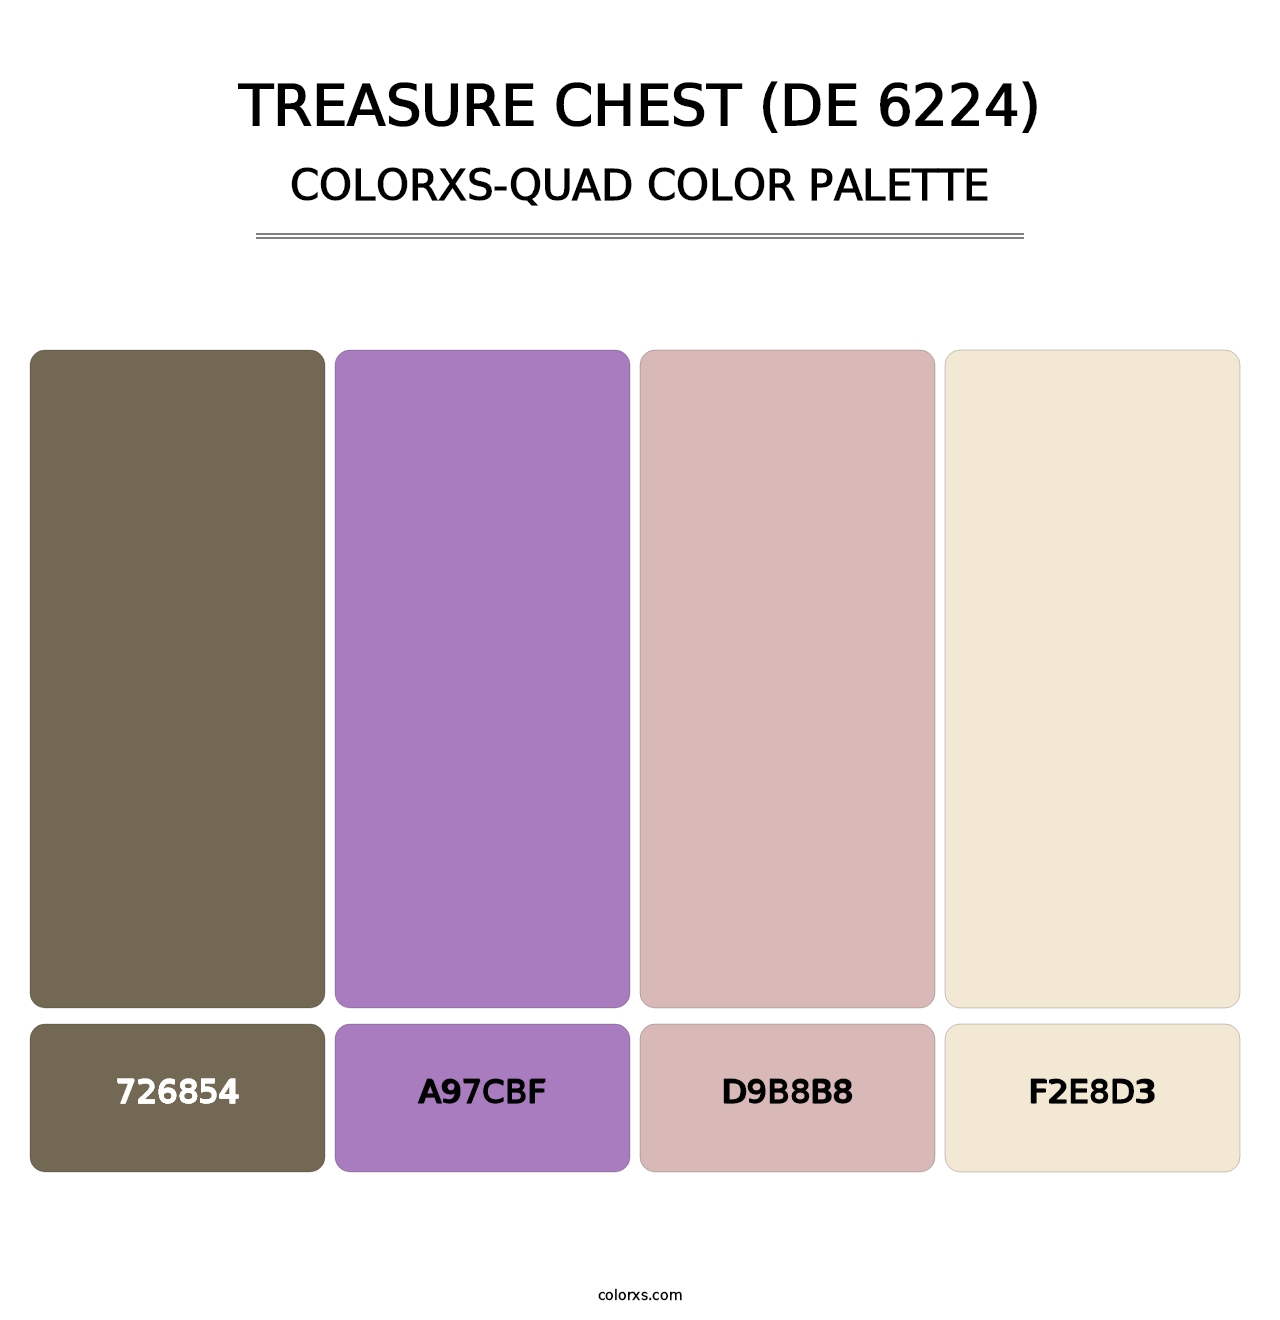 Treasure Chest (DE 6224) - Colorxs Quad Palette